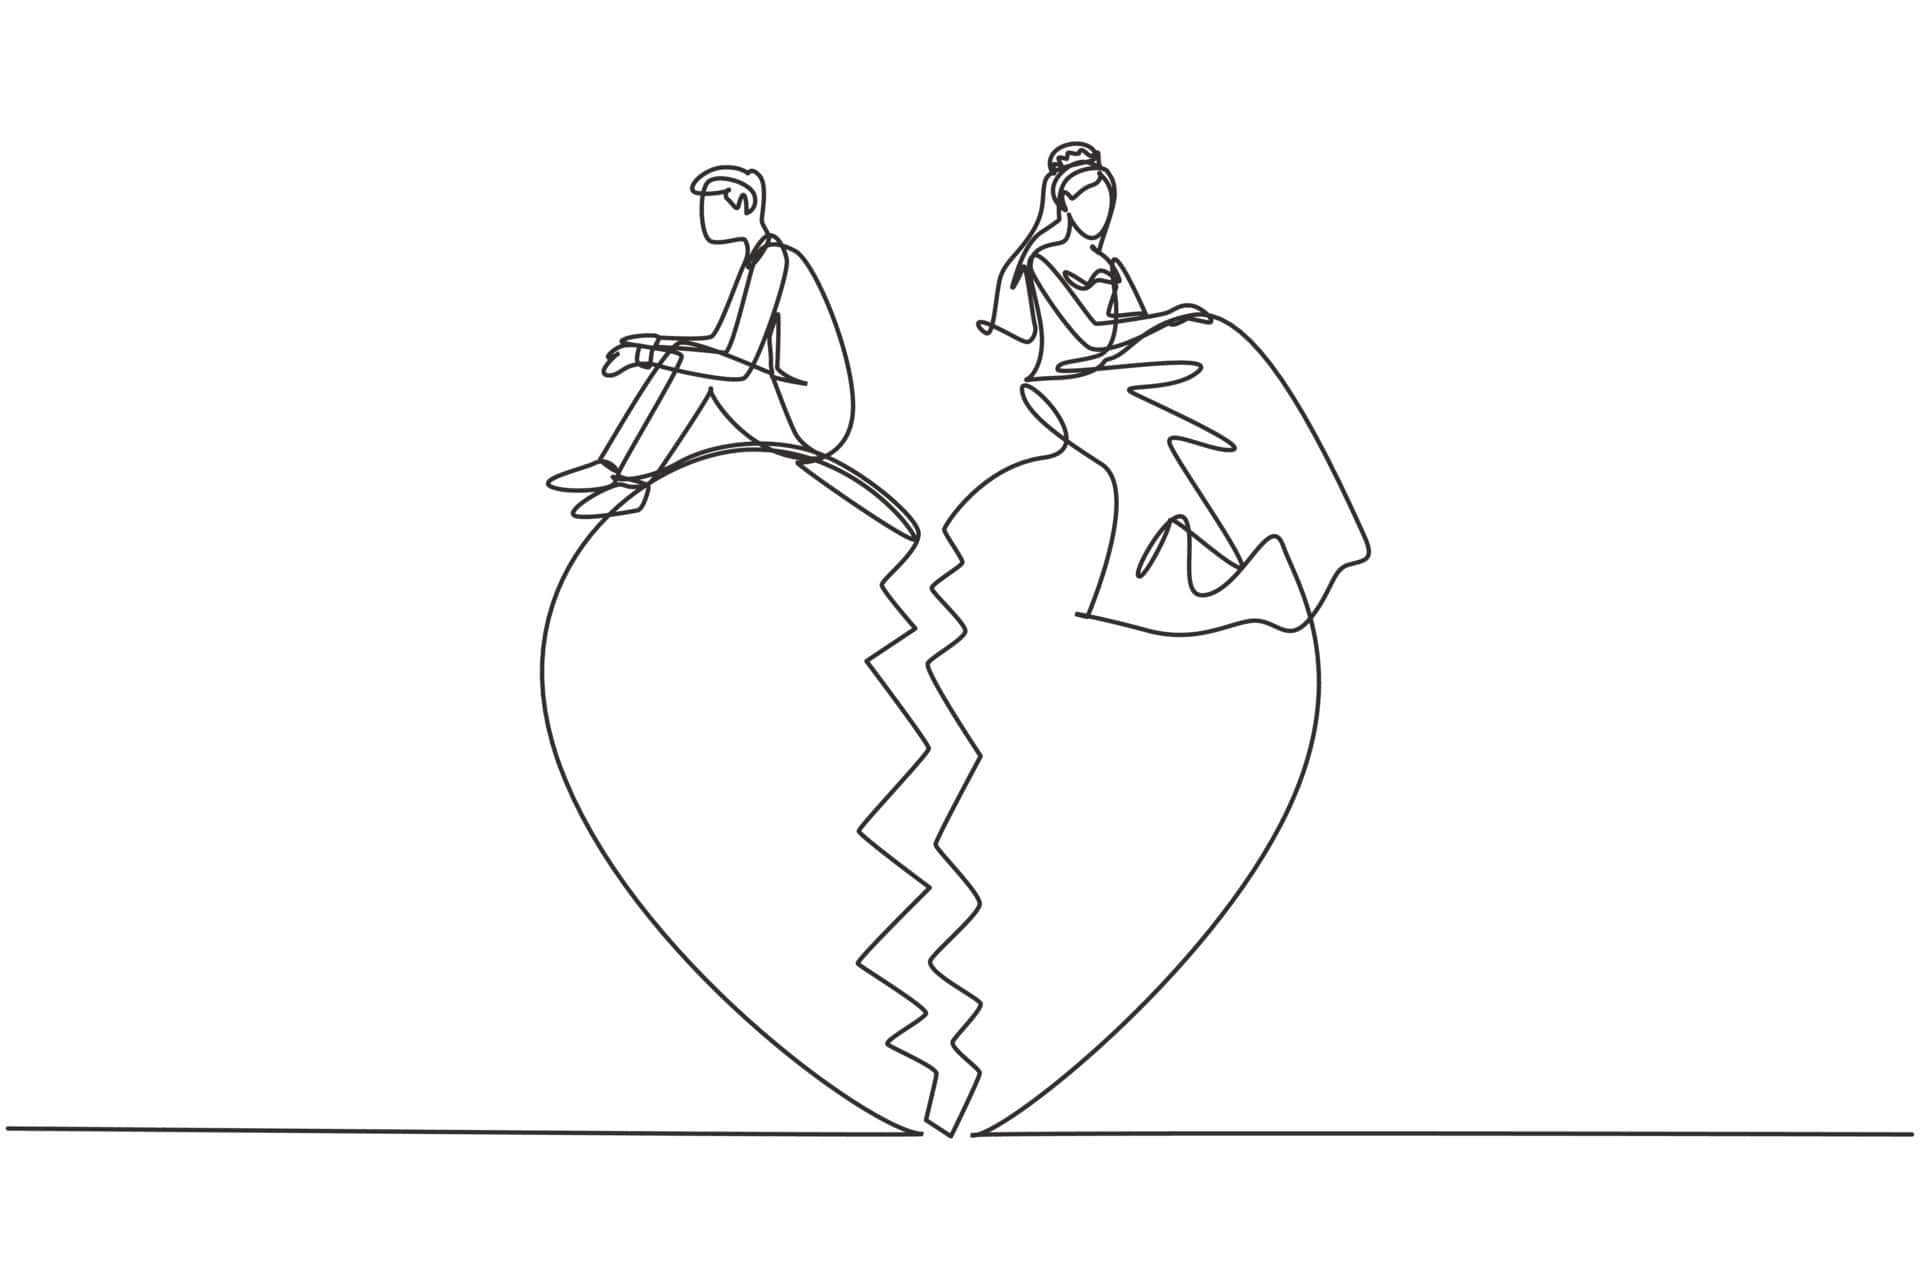 Einekontinuierliche Linienzeichnung Eines Paares, Das Auf Einem Gebrochenen Herz Sitzt